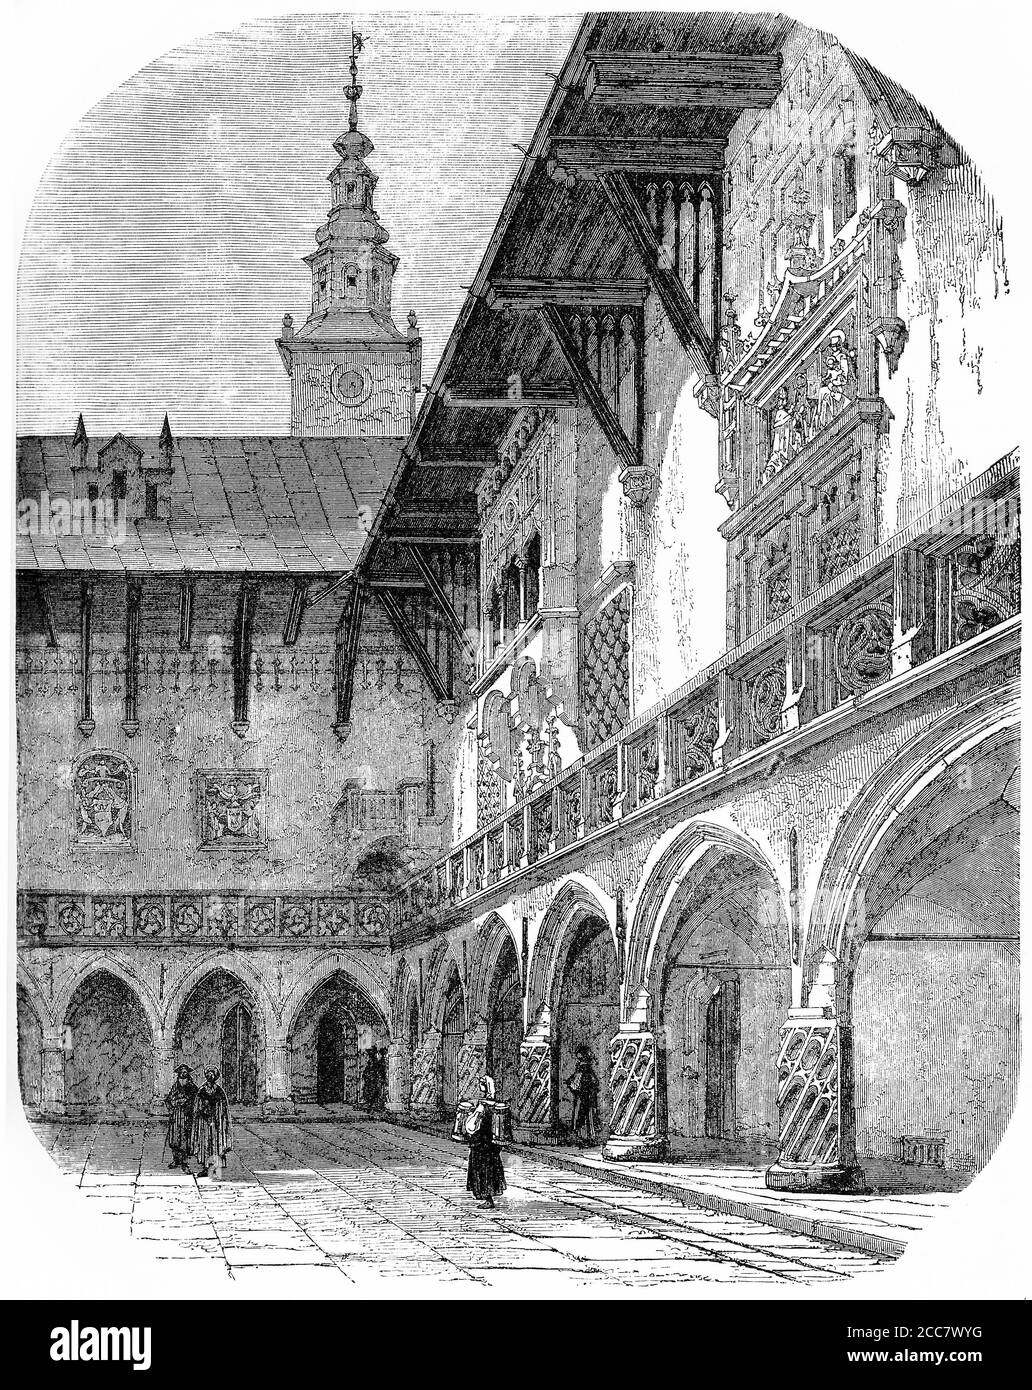 Gravure d'une cour à l'université de Cracovie, vers 1570, illustration de 'l'histoire du protestantisme' par James Aitken Wylie (1808-1890), pub. 1878 Banque D'Images